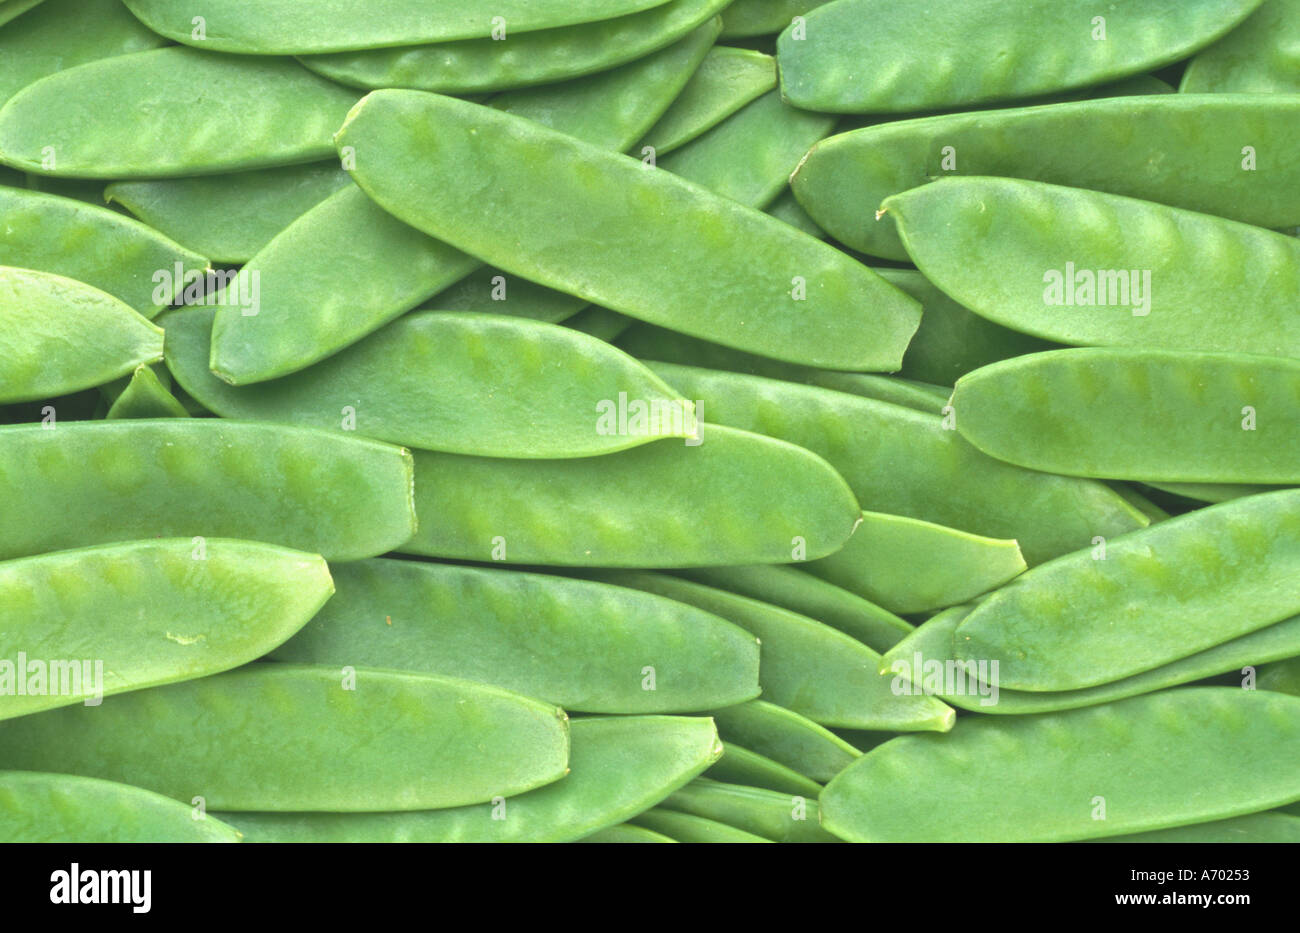 food vegetable peas sugarpeas sugar pisum saccharatum Stock Photo